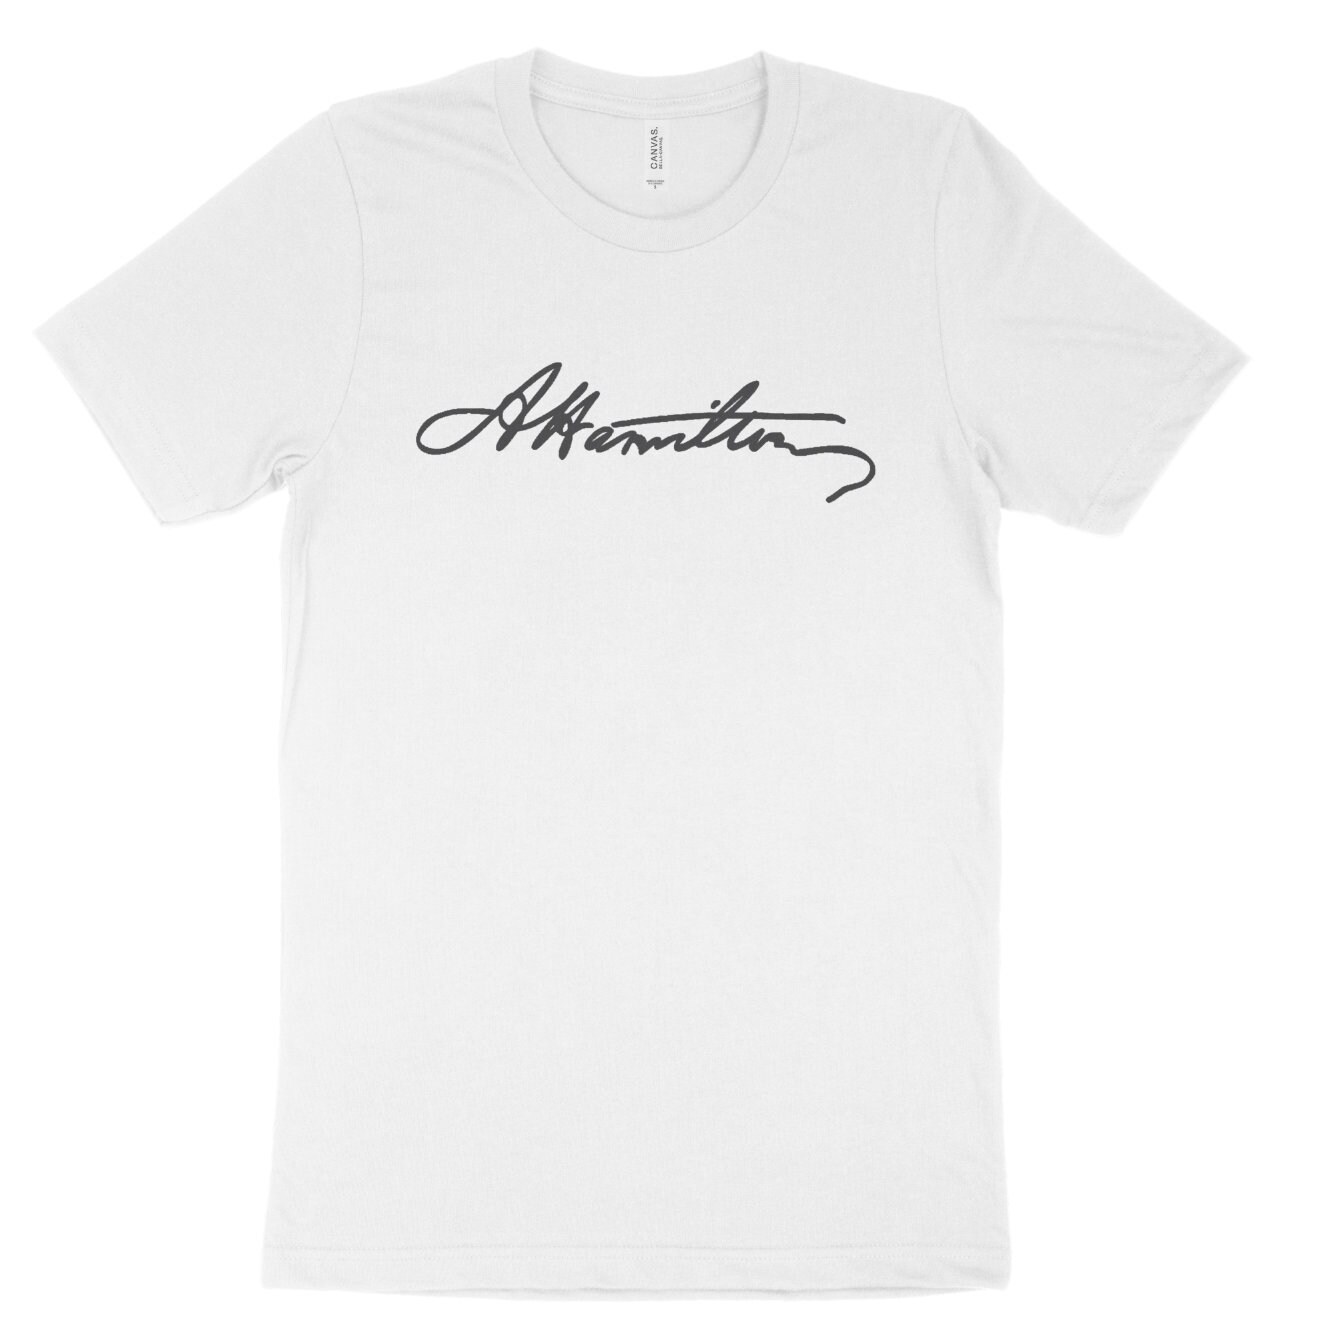 A. HAMILTON signature shirt | Etsy